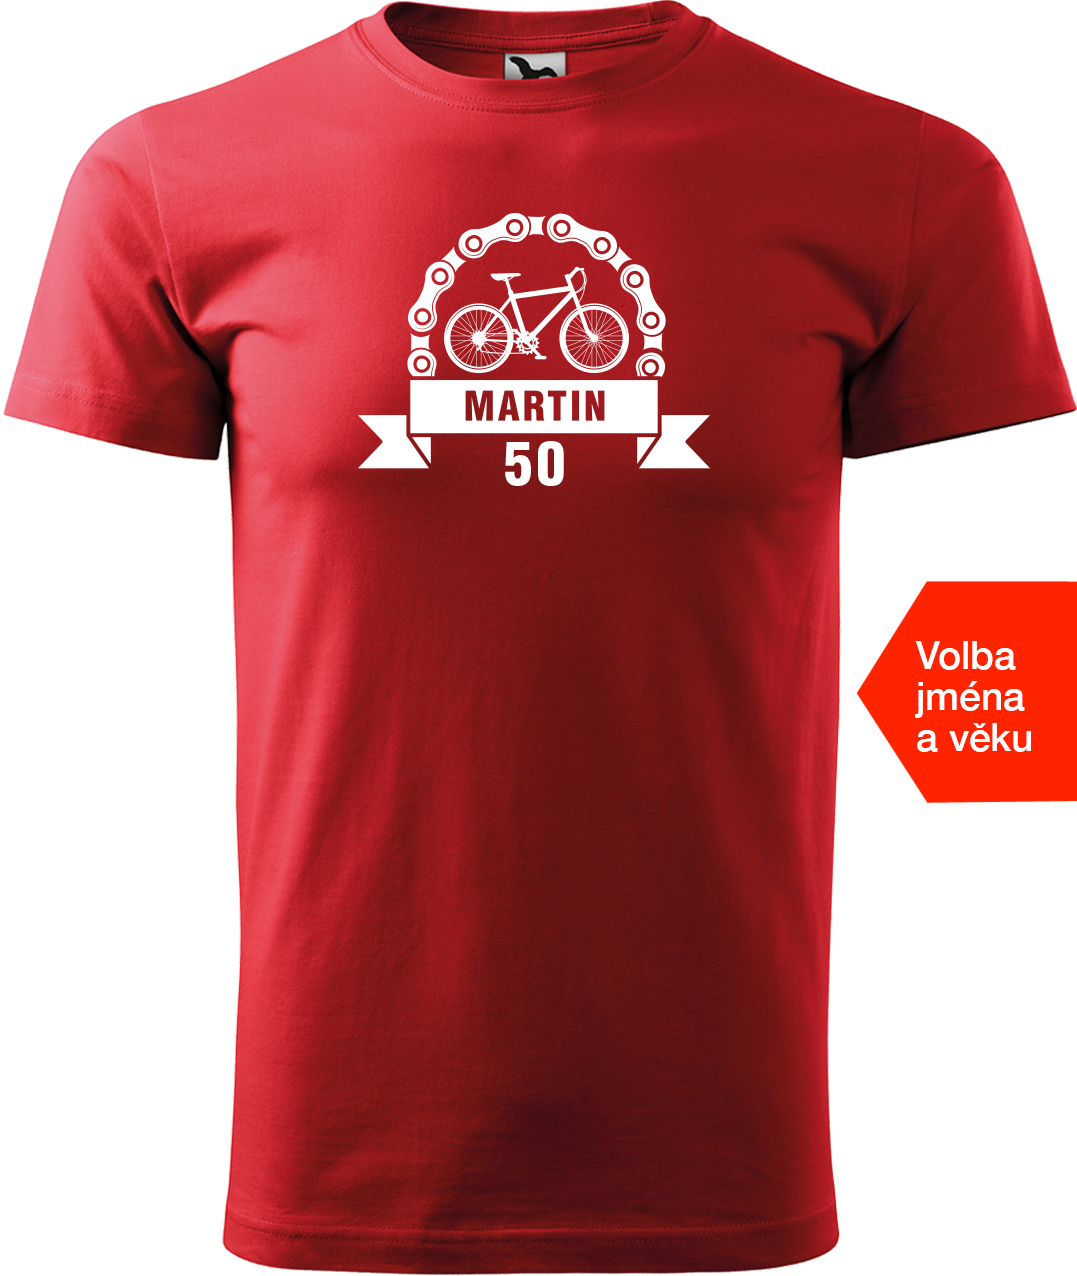 Pánské tričko pro cyklistu se jménem a věkem - Blahopřání Velikost: 3XL, Barva: Červená (07)